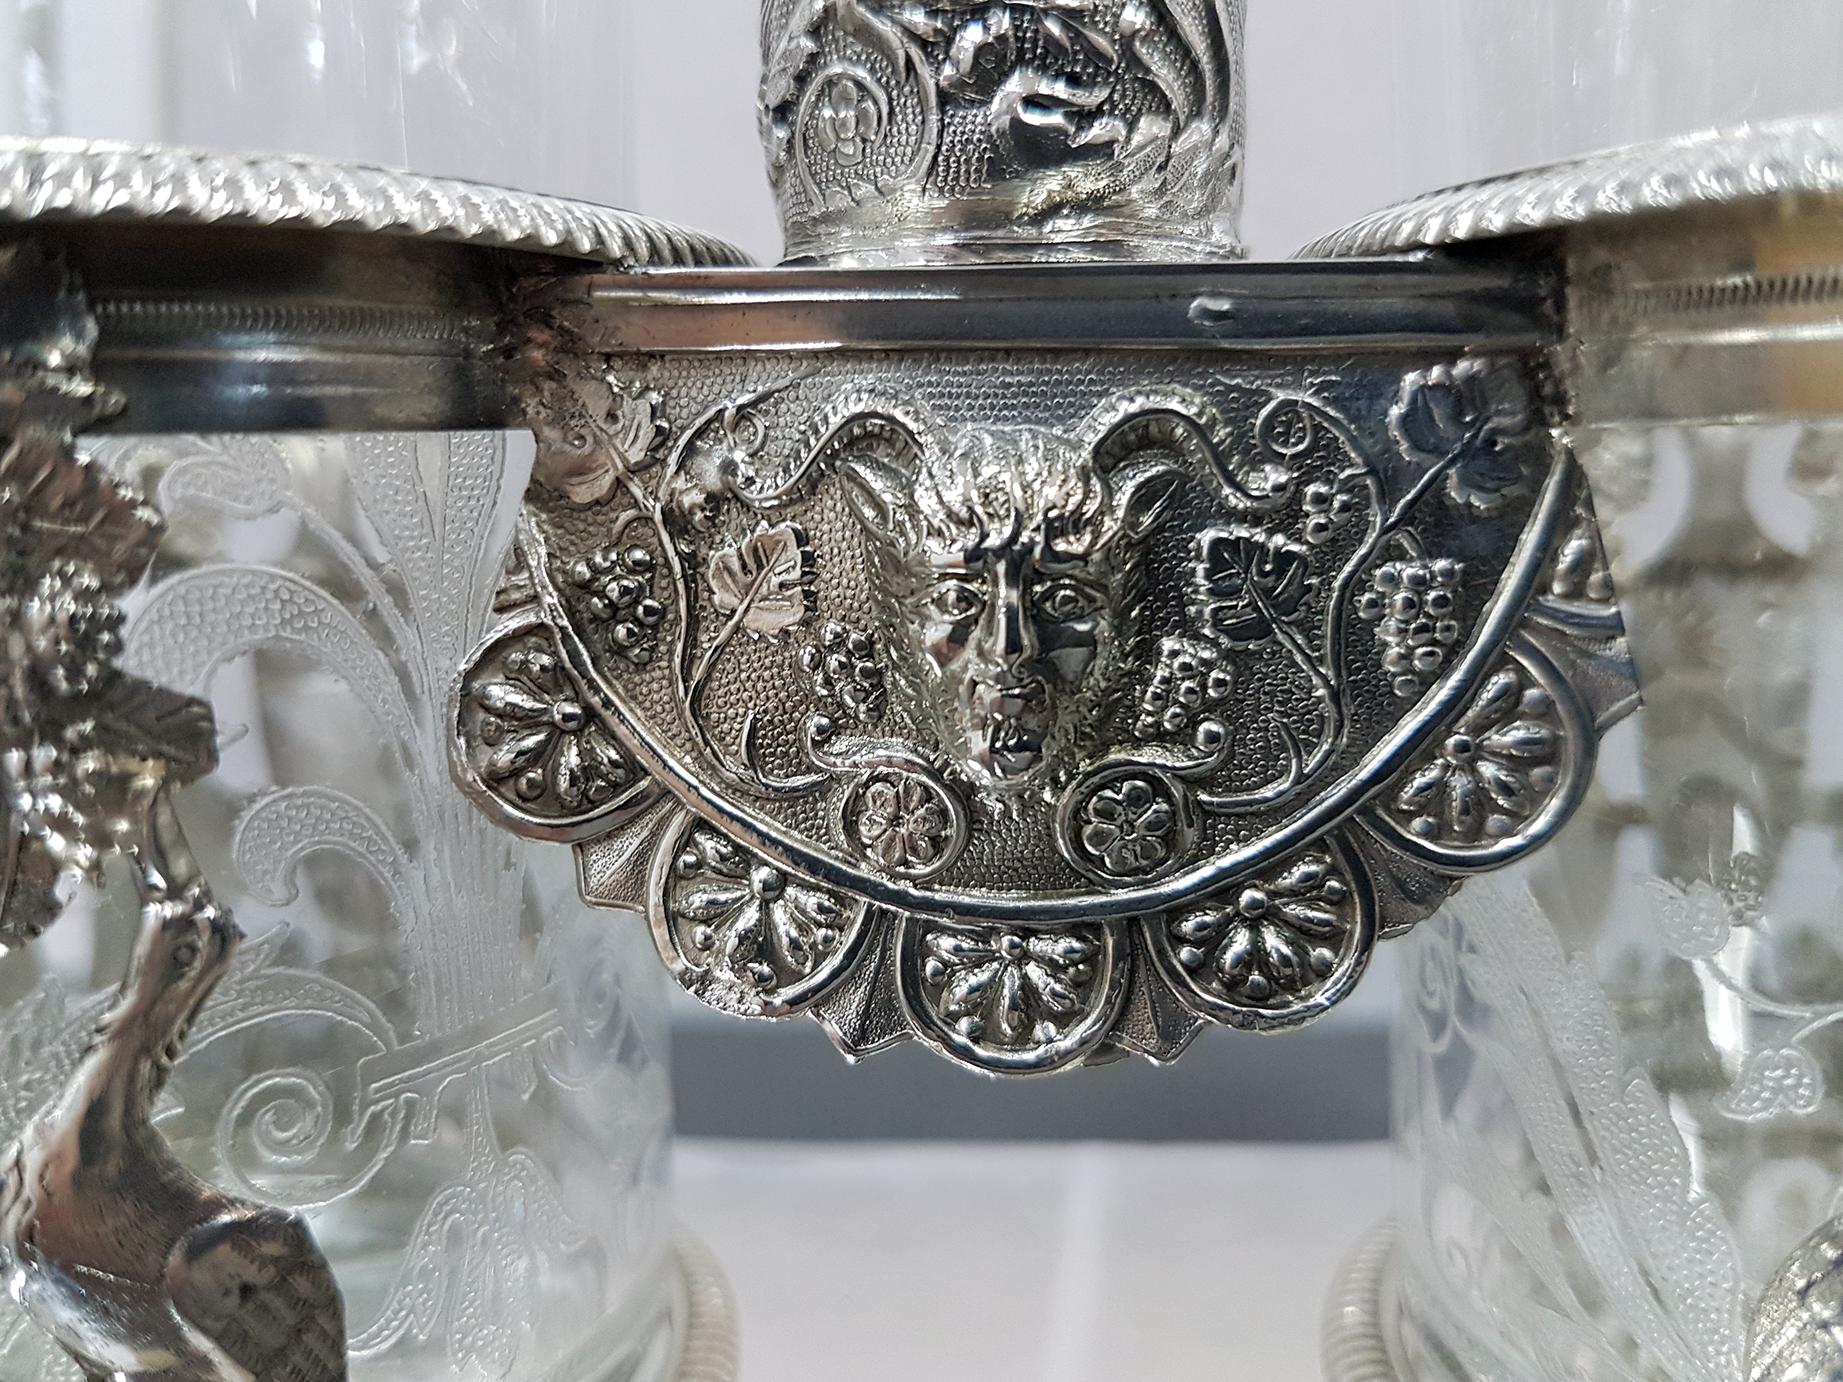 Italienisches Silber 950-Krümelentferner von Gioanni Gilardi, Silberschmied in Turin, 1824 (Handgefertigt)